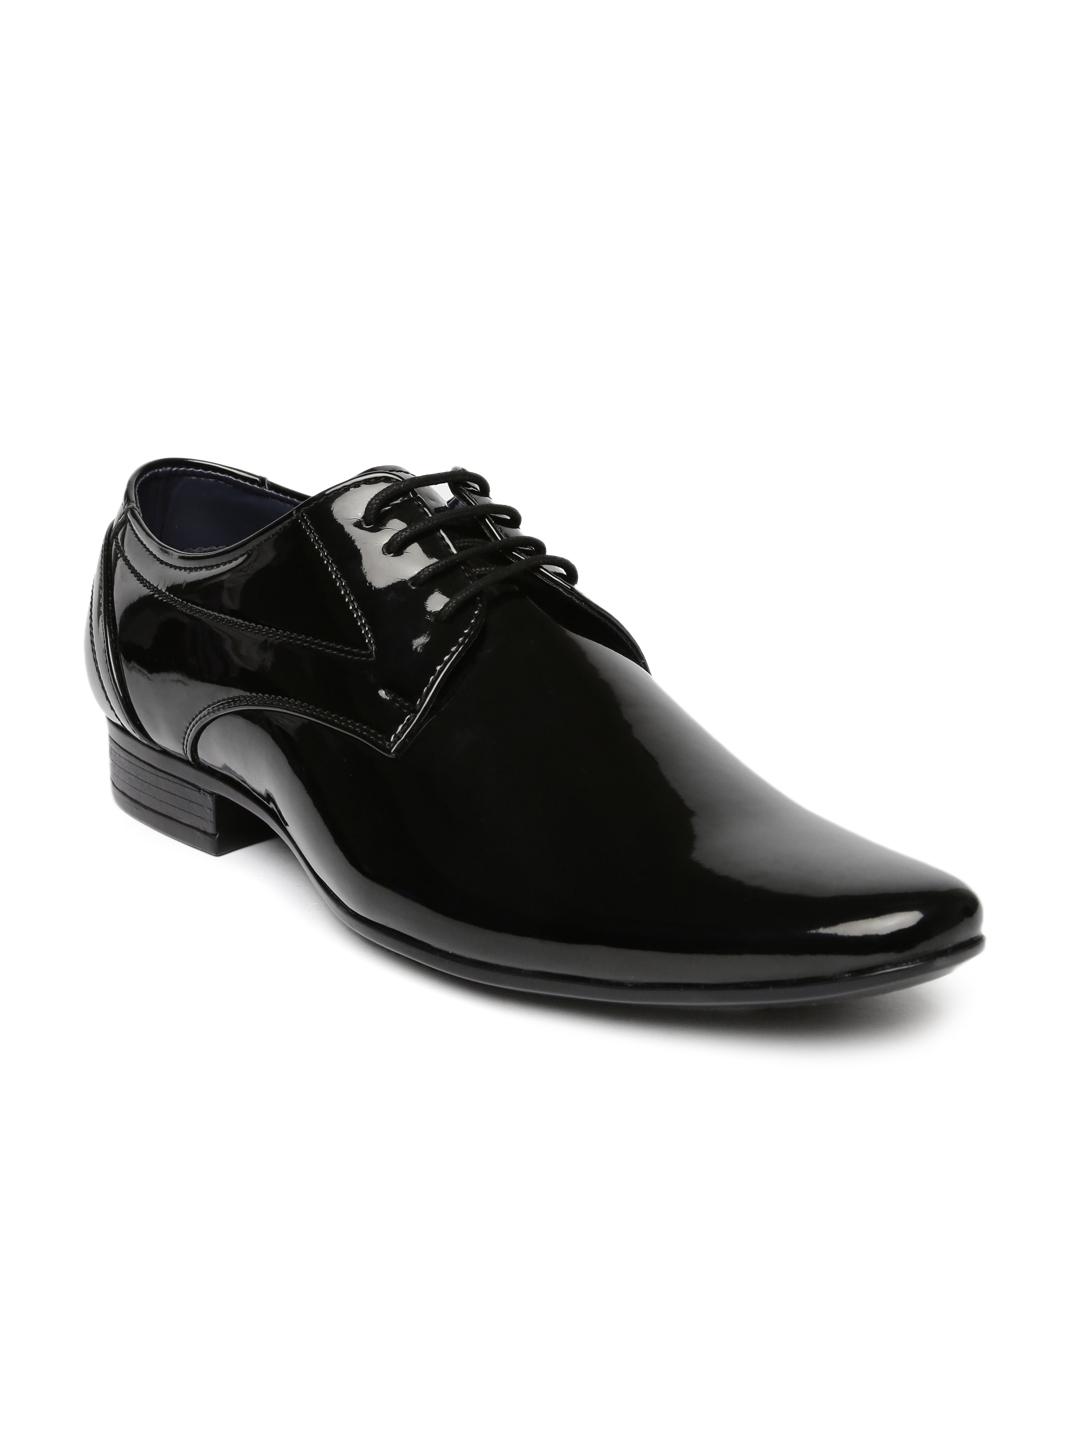 Buy Bata Men Black Peter Derby Shoes - Formal Shoes for Men 1688728 ...